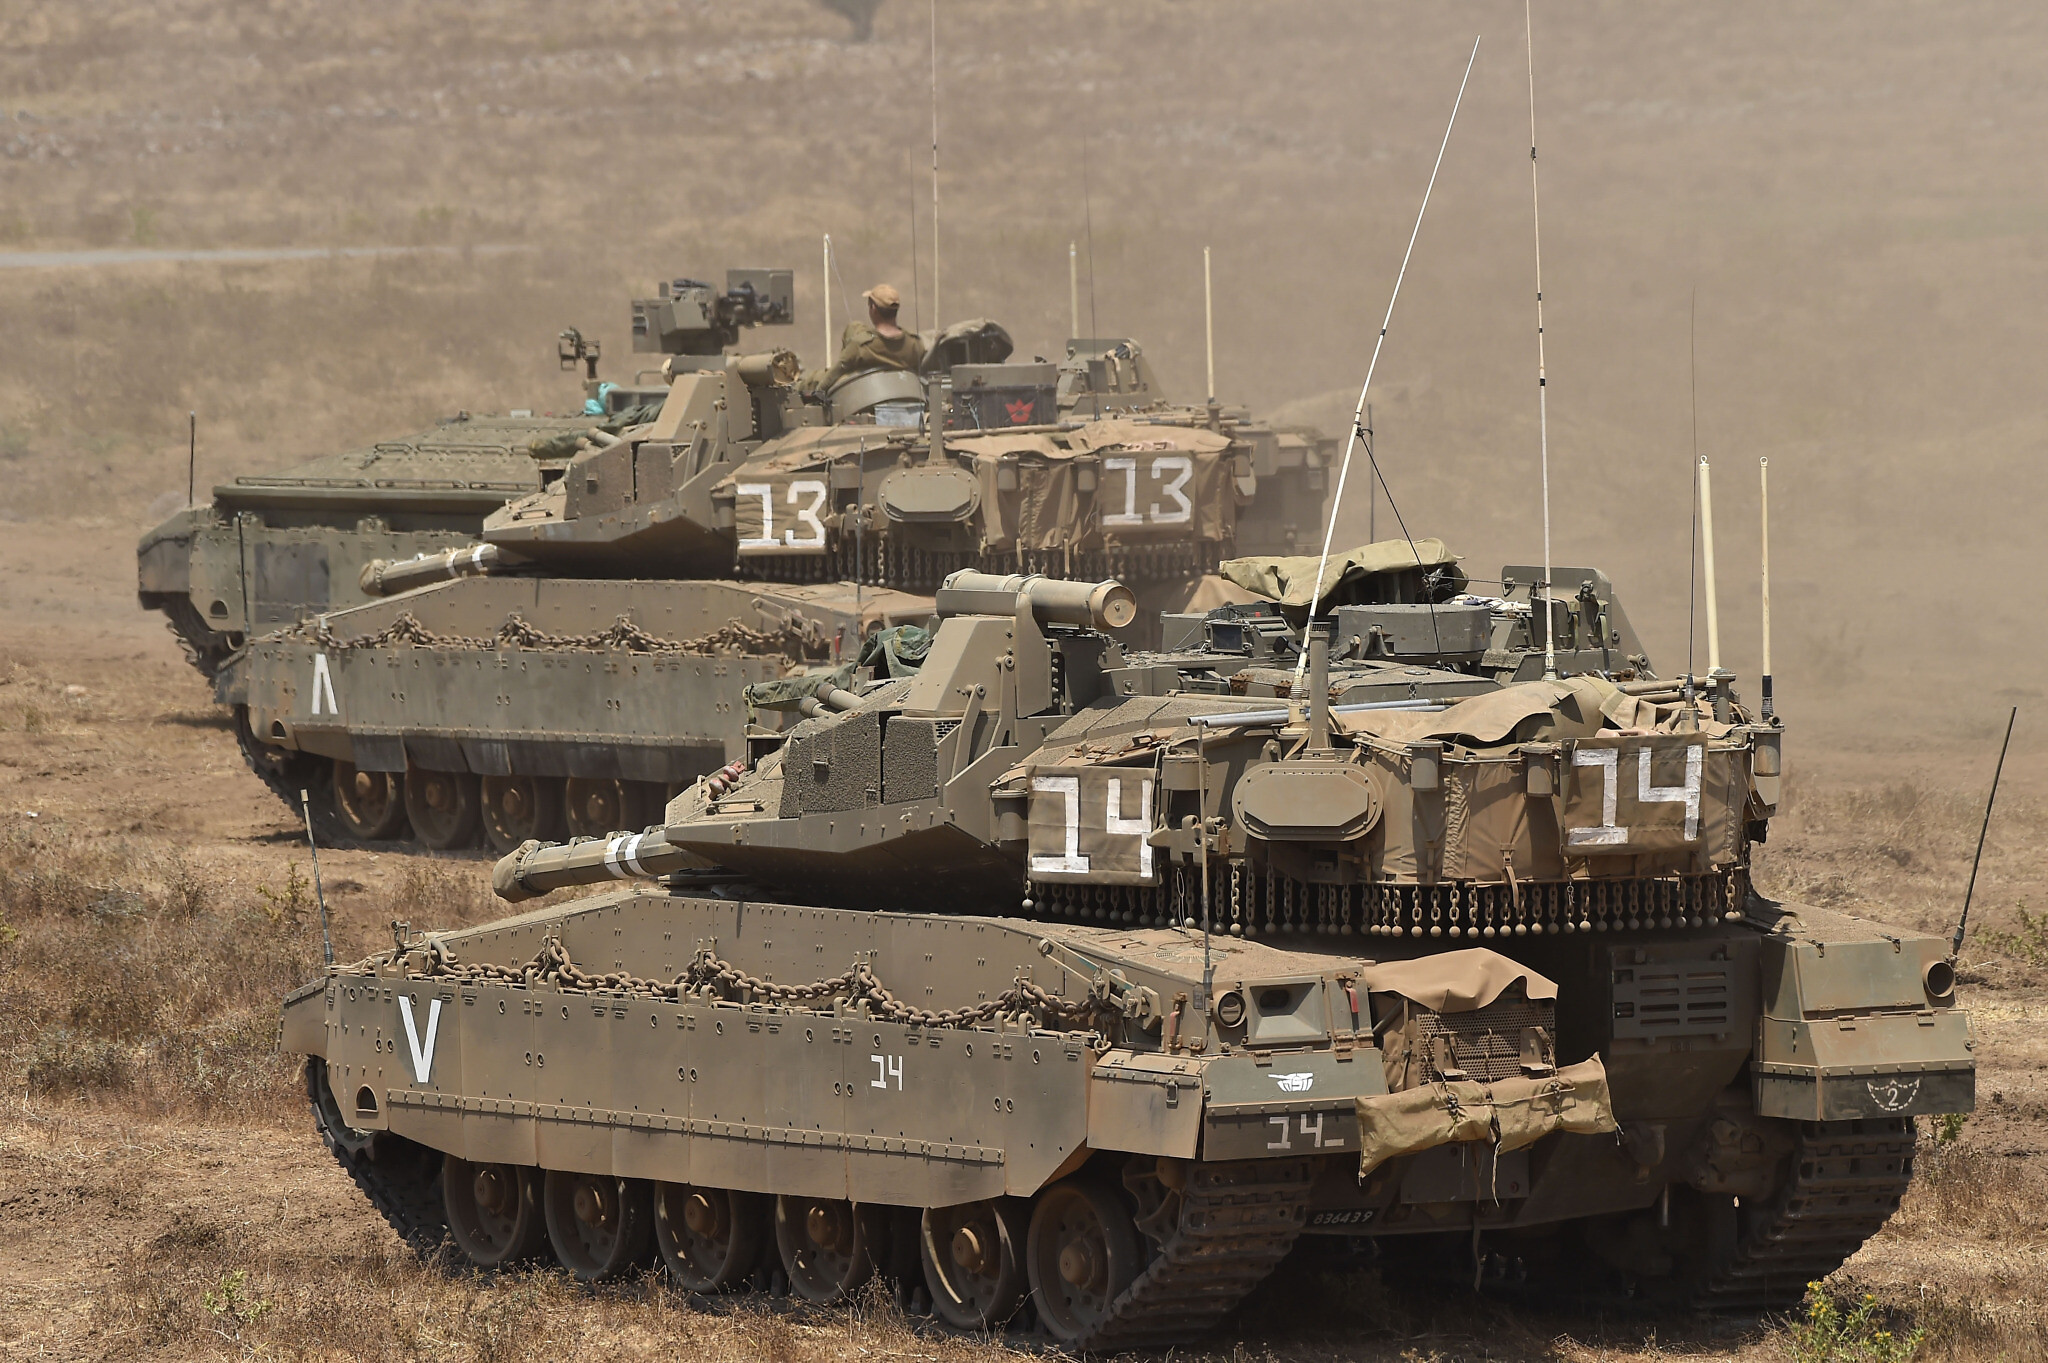 Ισραηλινός Στρατός: Σε 12 ώρες ξεκινά η επιχείρηση  που θα βάλει τέλος στην ύπαρξη  της Χαμάς  και της Λωρίδας της Γάζας